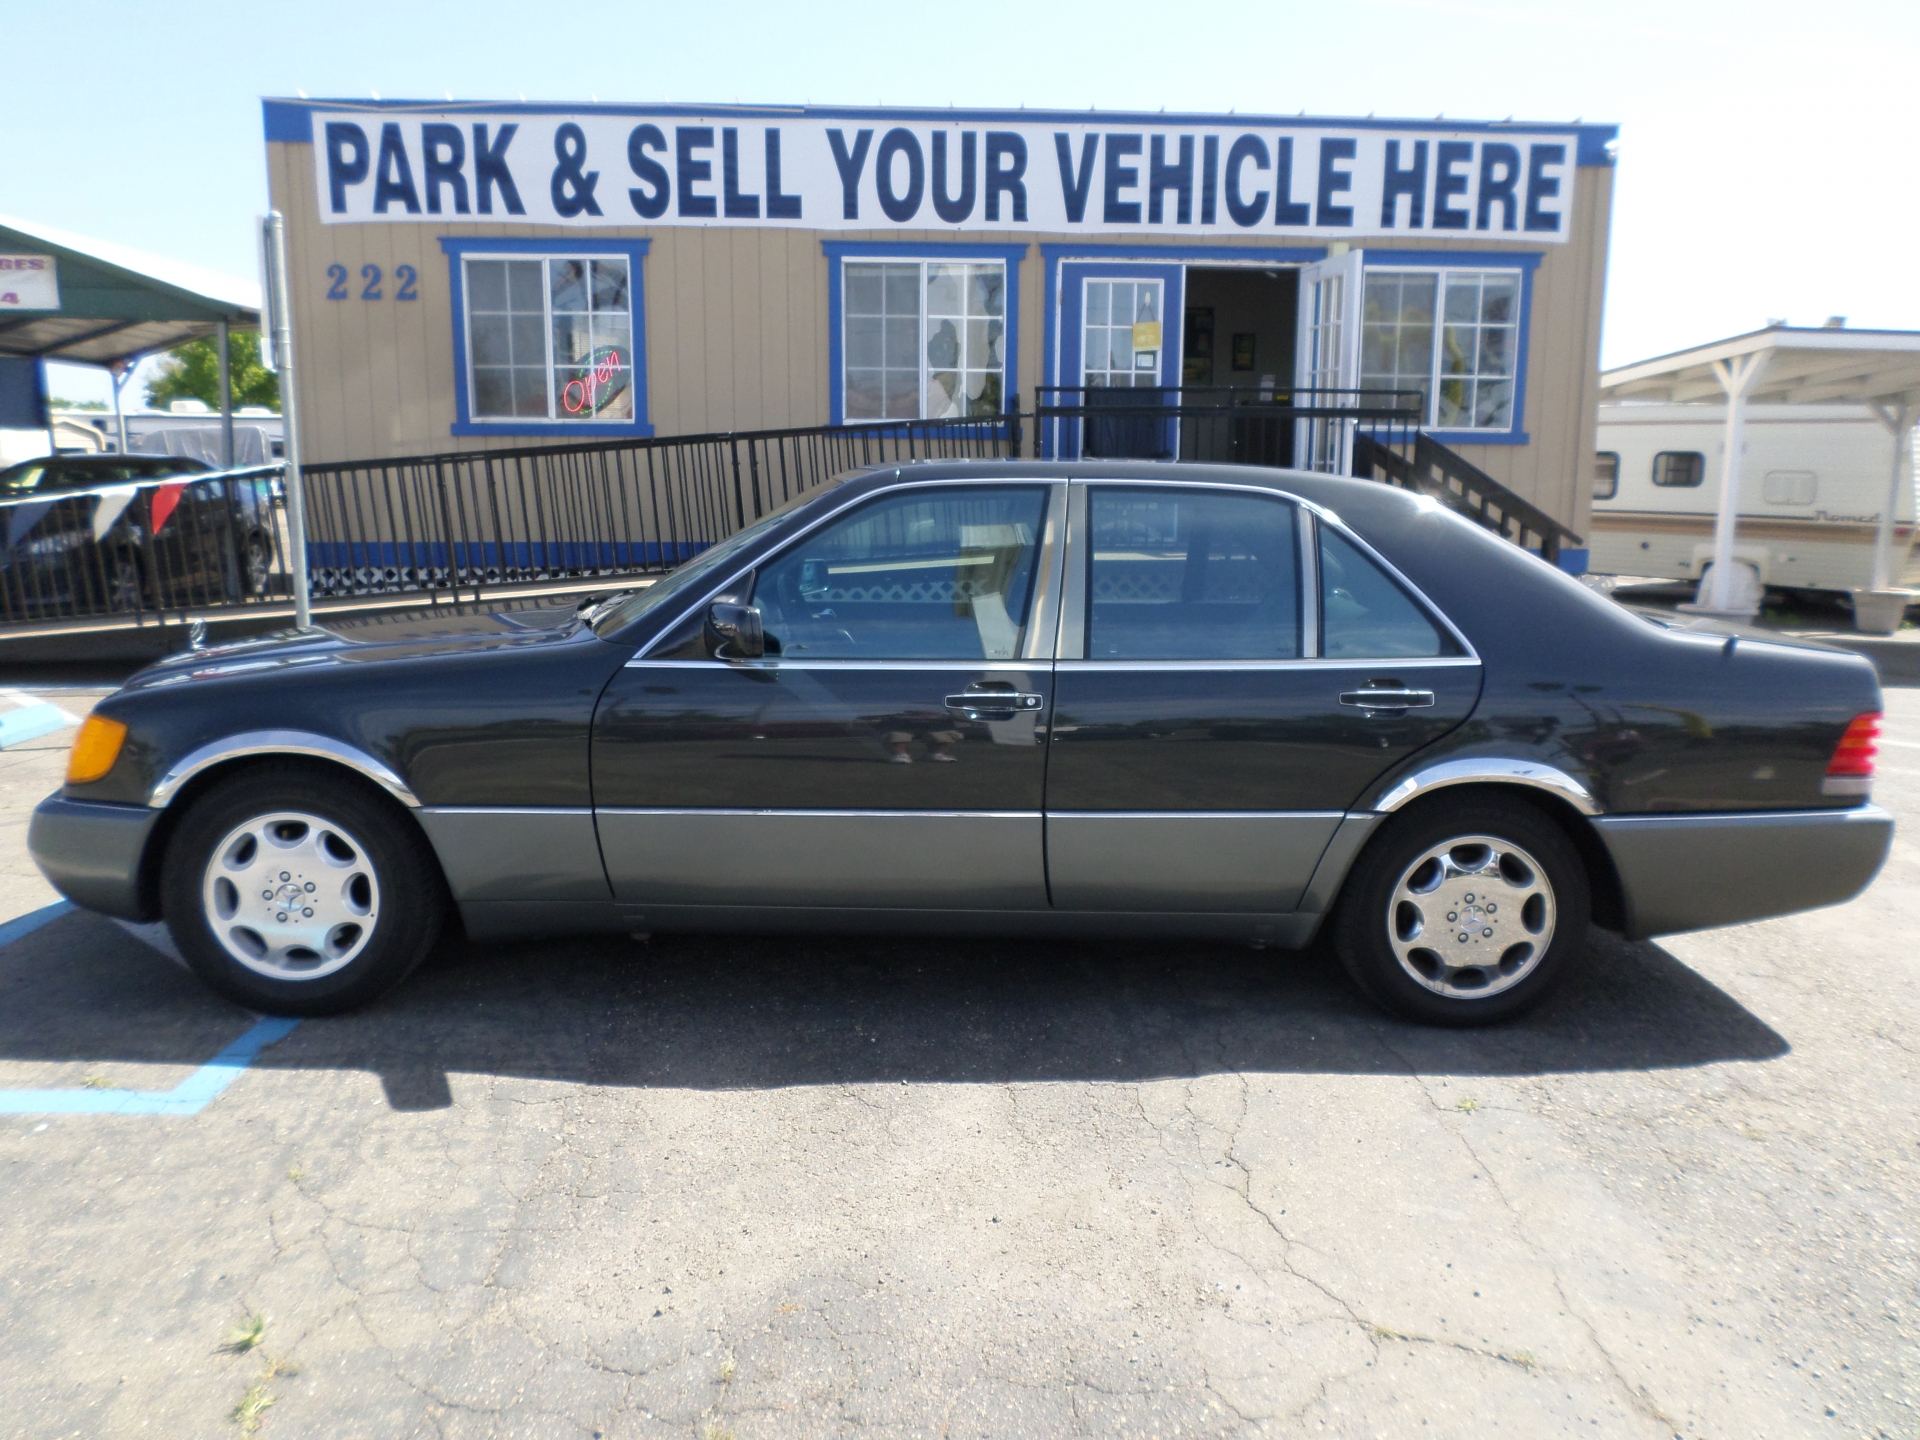 Car For Sale 1992 Mercedes Benz 400 Se In Lodi Stockton Ca Lodi Park And Sell